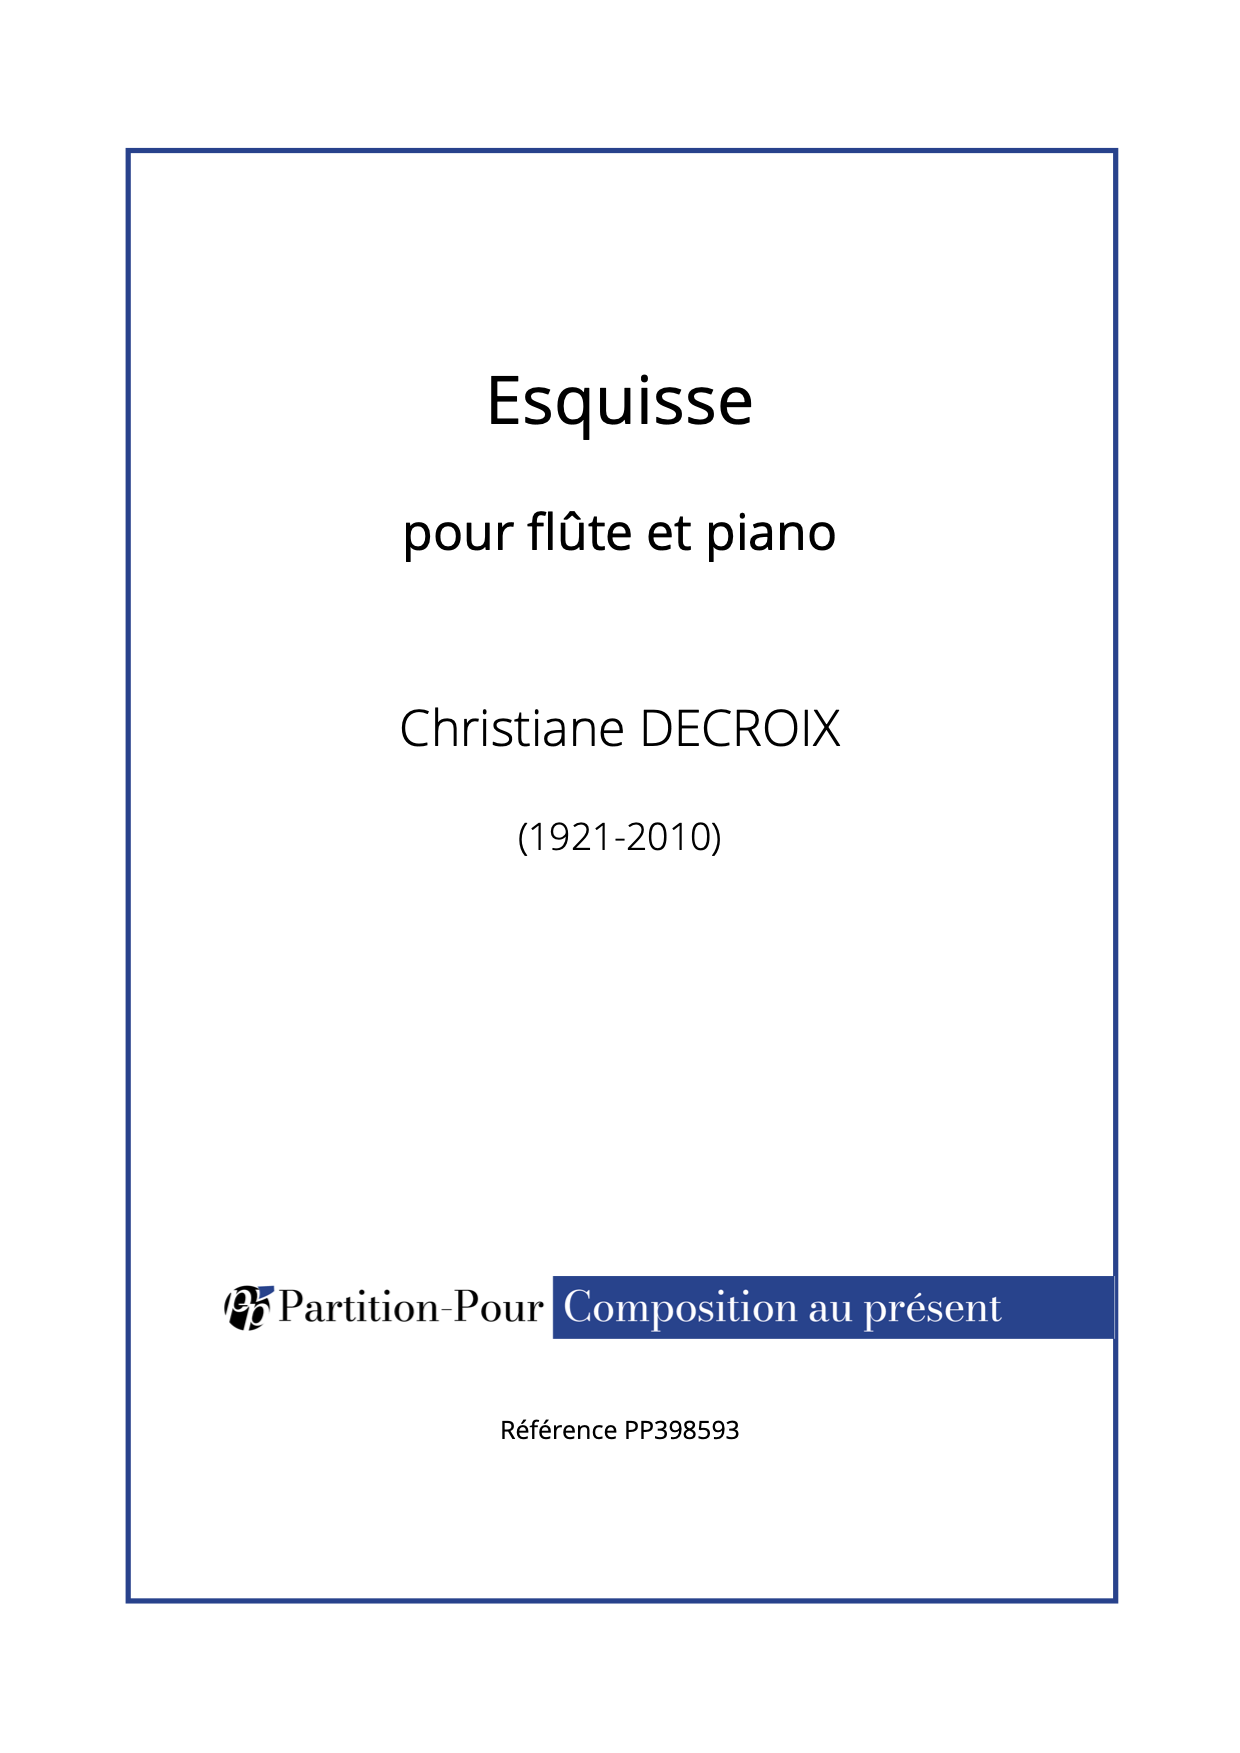 PP398593 - Decroix C - Esquisse - flûte & piano -présentation